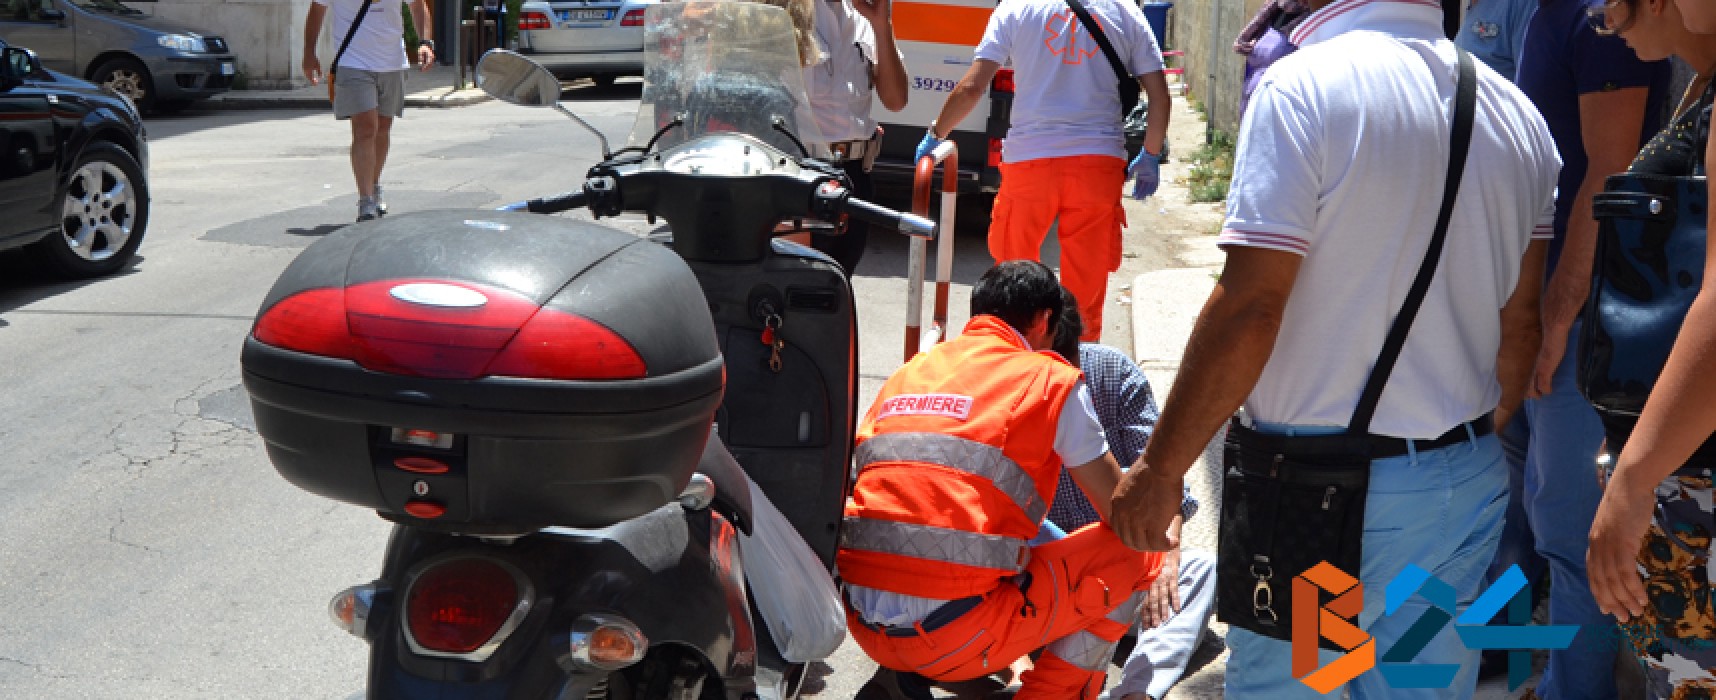 Incidente in Via San Lorenzo, coinvolti uno scooter ed un’autovettura